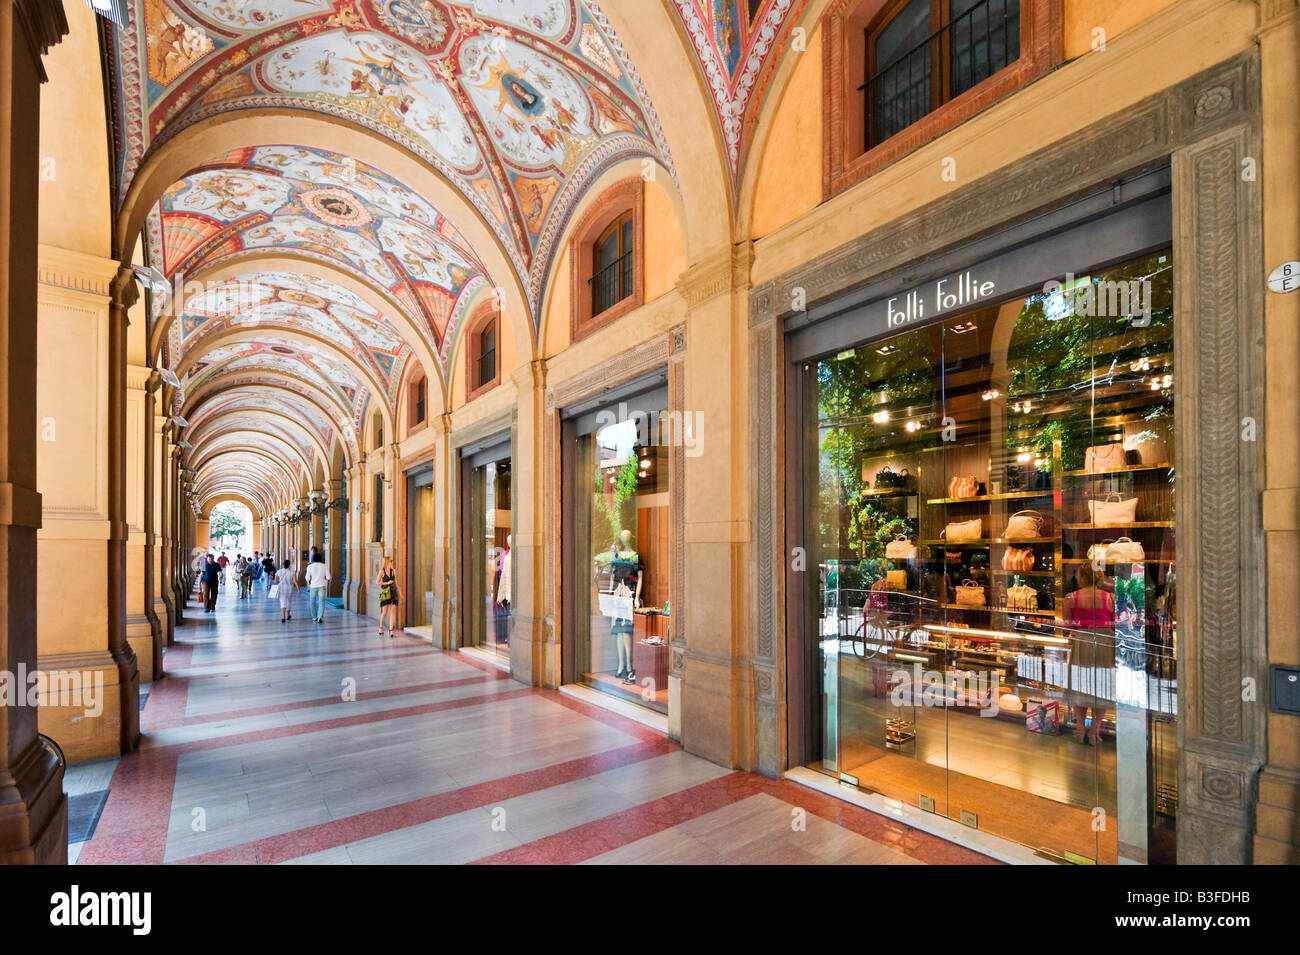 Exclusive shops in a portico on Via Farini in the historic centre, Bologna, Emilia Romagna, Italy Stock Photo